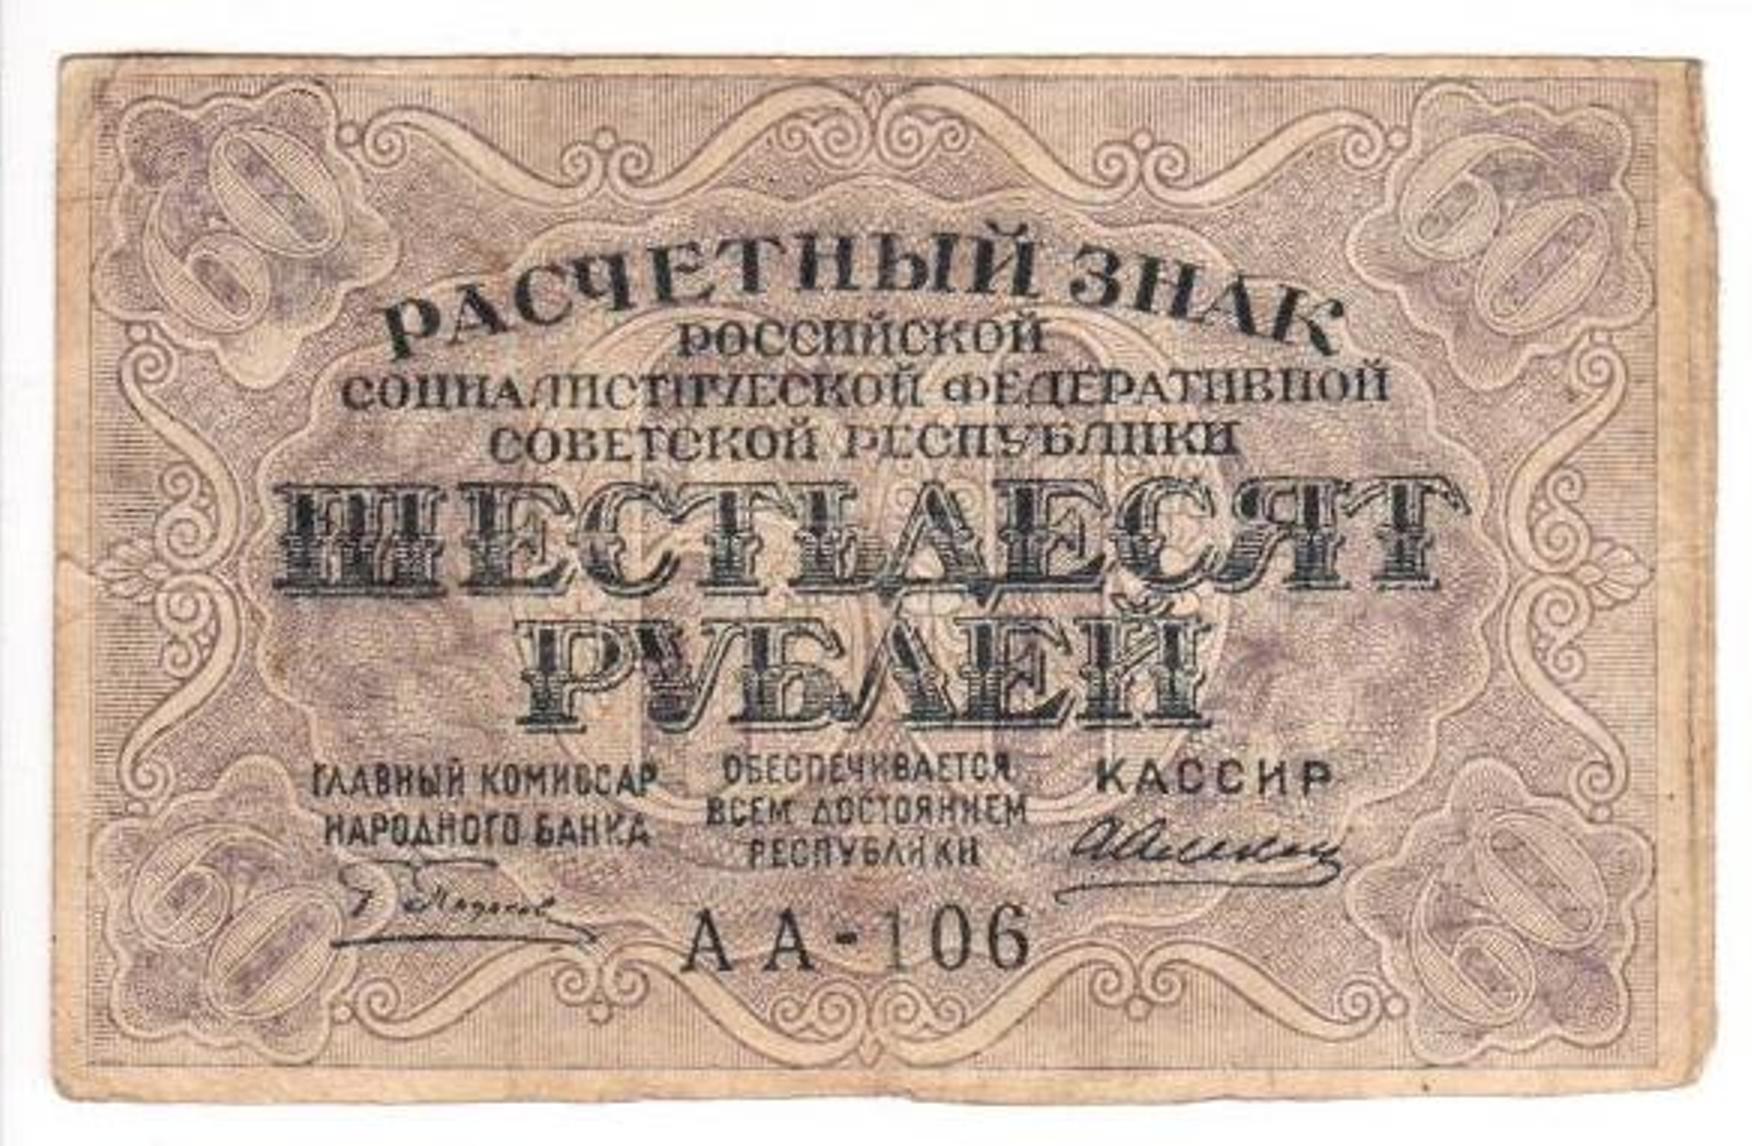 60 рублей метр. Купюра 60 рублей. Бумажные деньги до 1917 года. Расчетный знак. Советские расчетные знаки 1919 года.